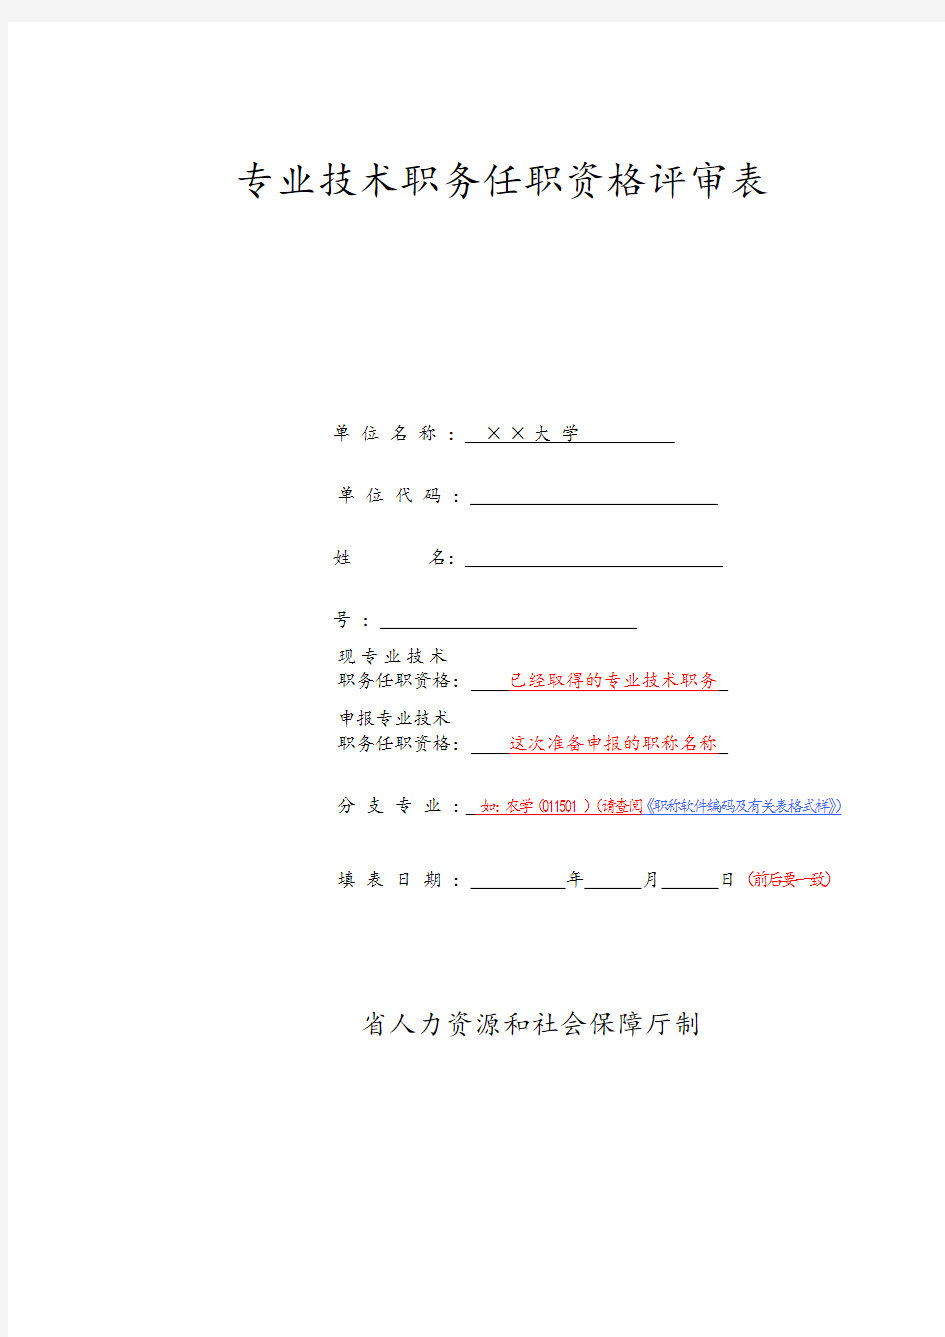 湖南省专业技术职务任职资评审表填写说明书